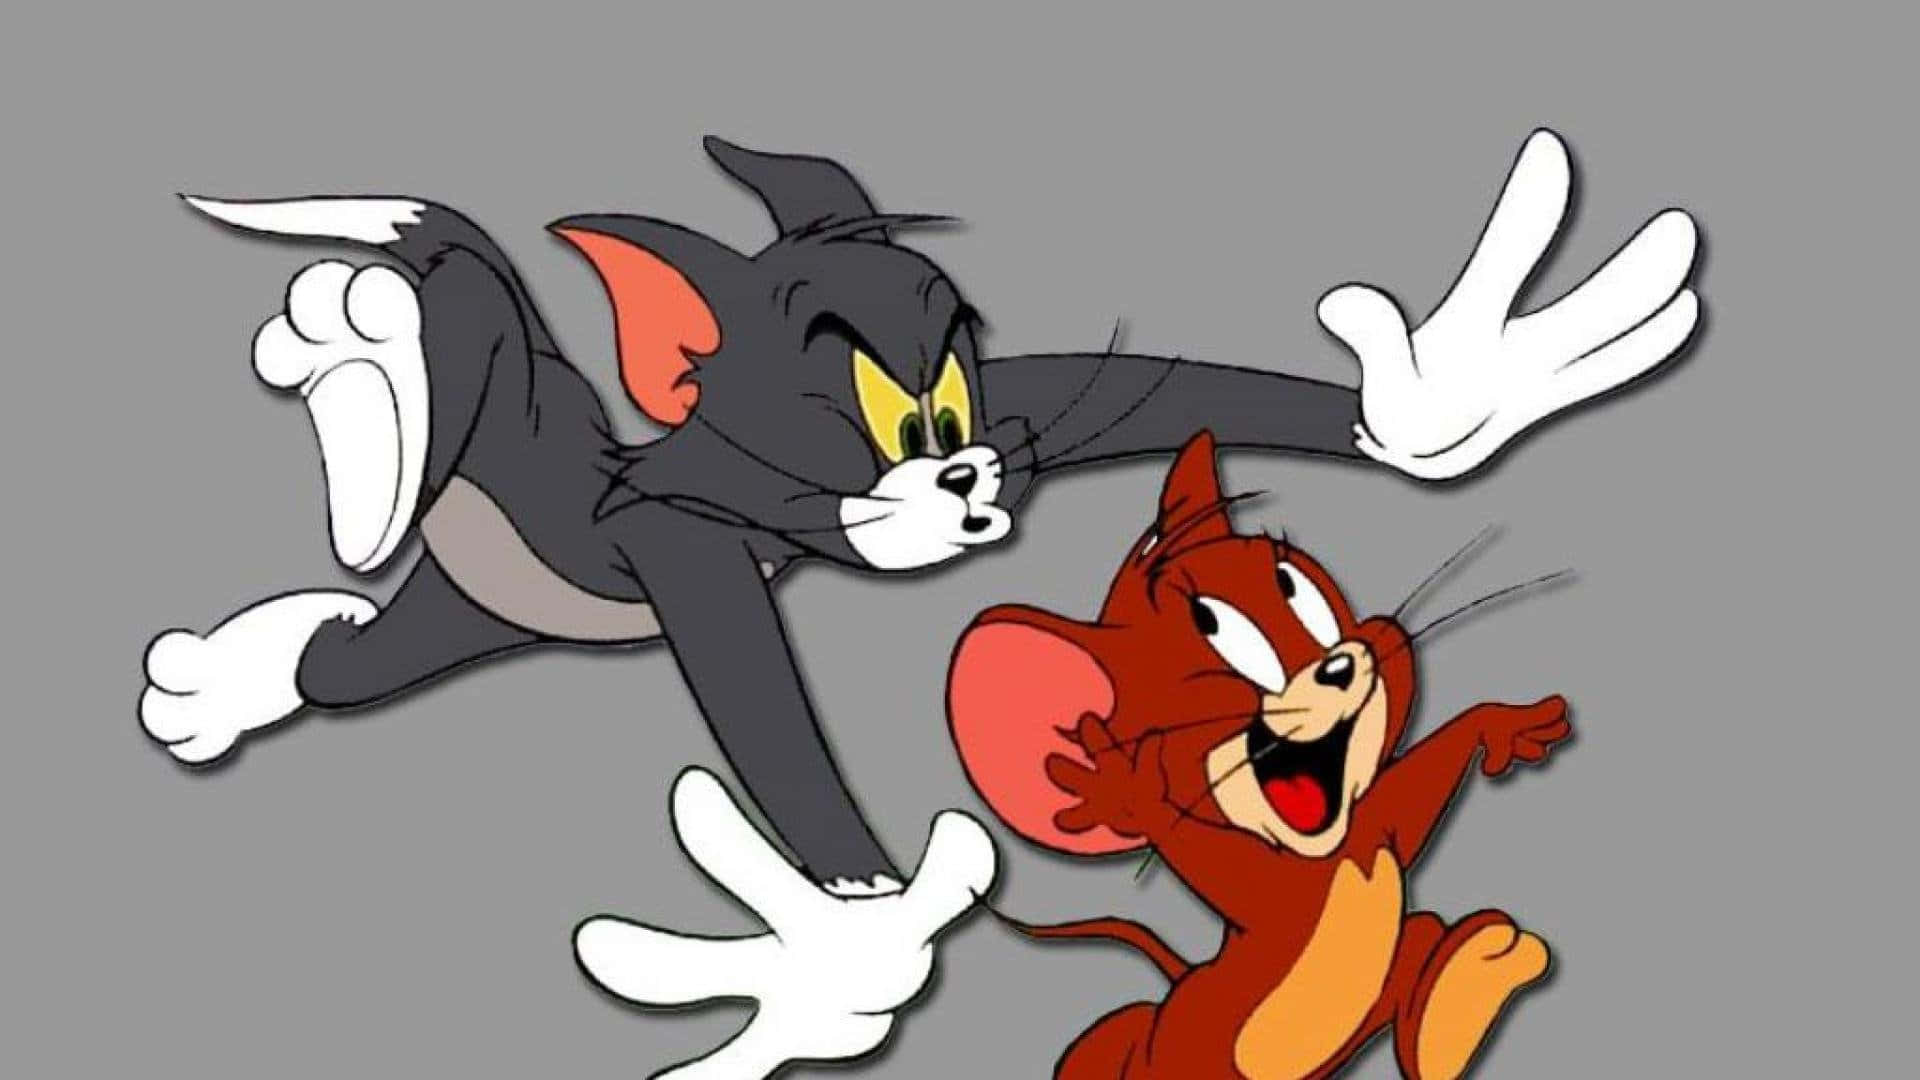 Tom og Jerry i et uhørt slagsmål! Wallpaper